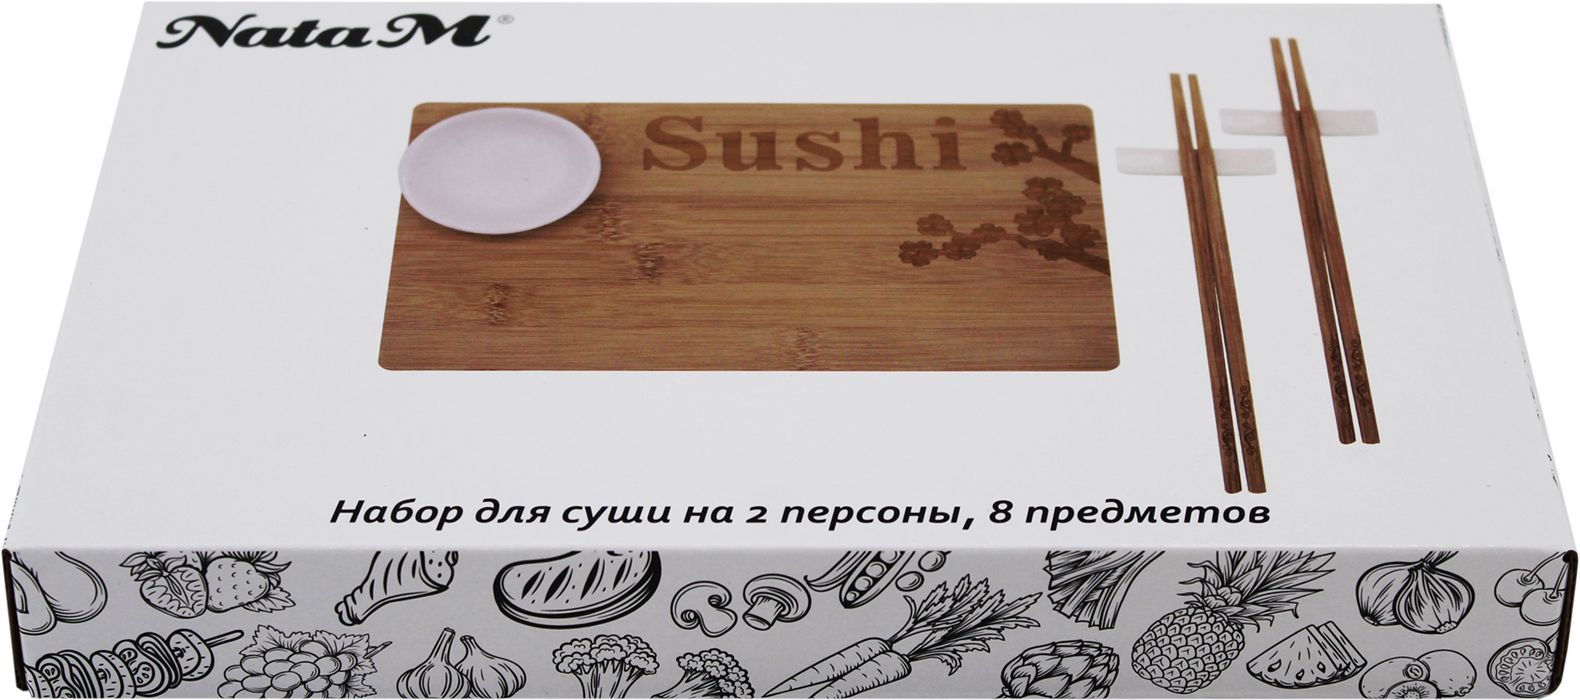 Набор для суши в нижнем фото 99